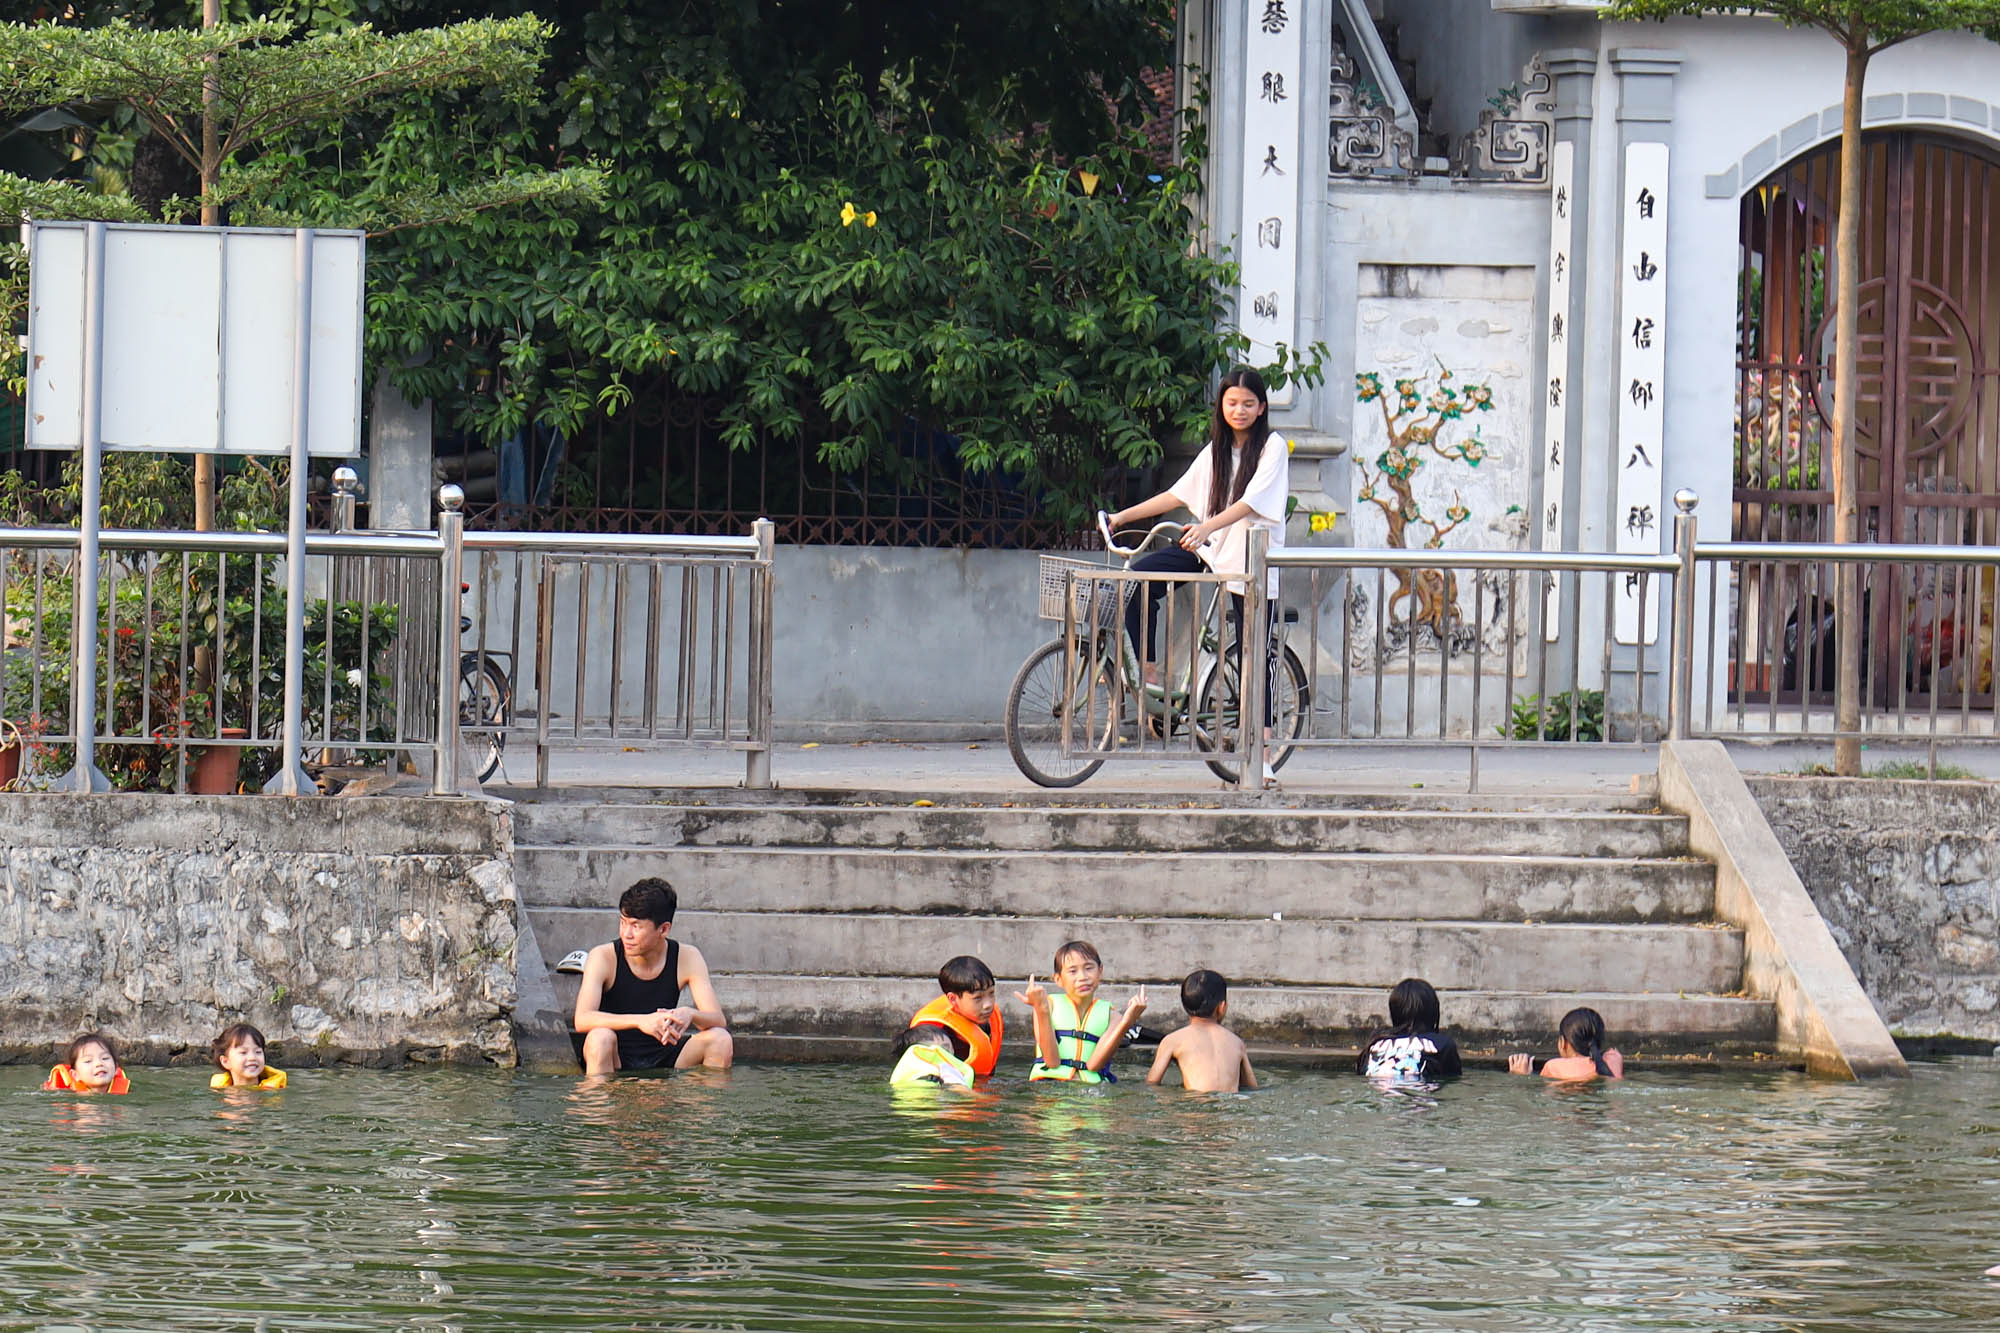 Ao làng thành 'bể bơi miễn phí', người Hà Nội đổ xô đi tắm giải nhiệt - Ảnh 3.